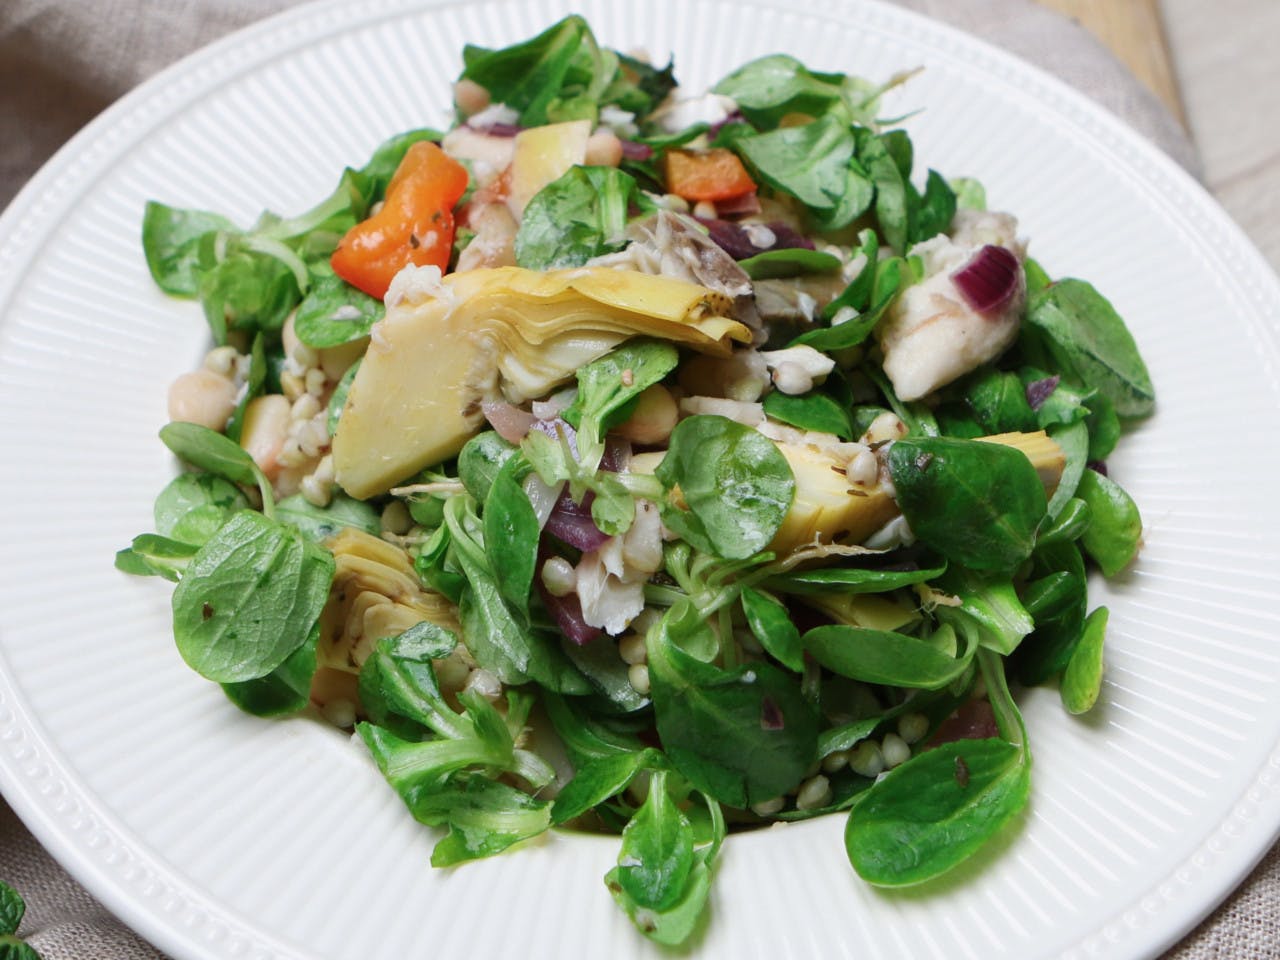 Buckwheat salad with mackerel and artichoke